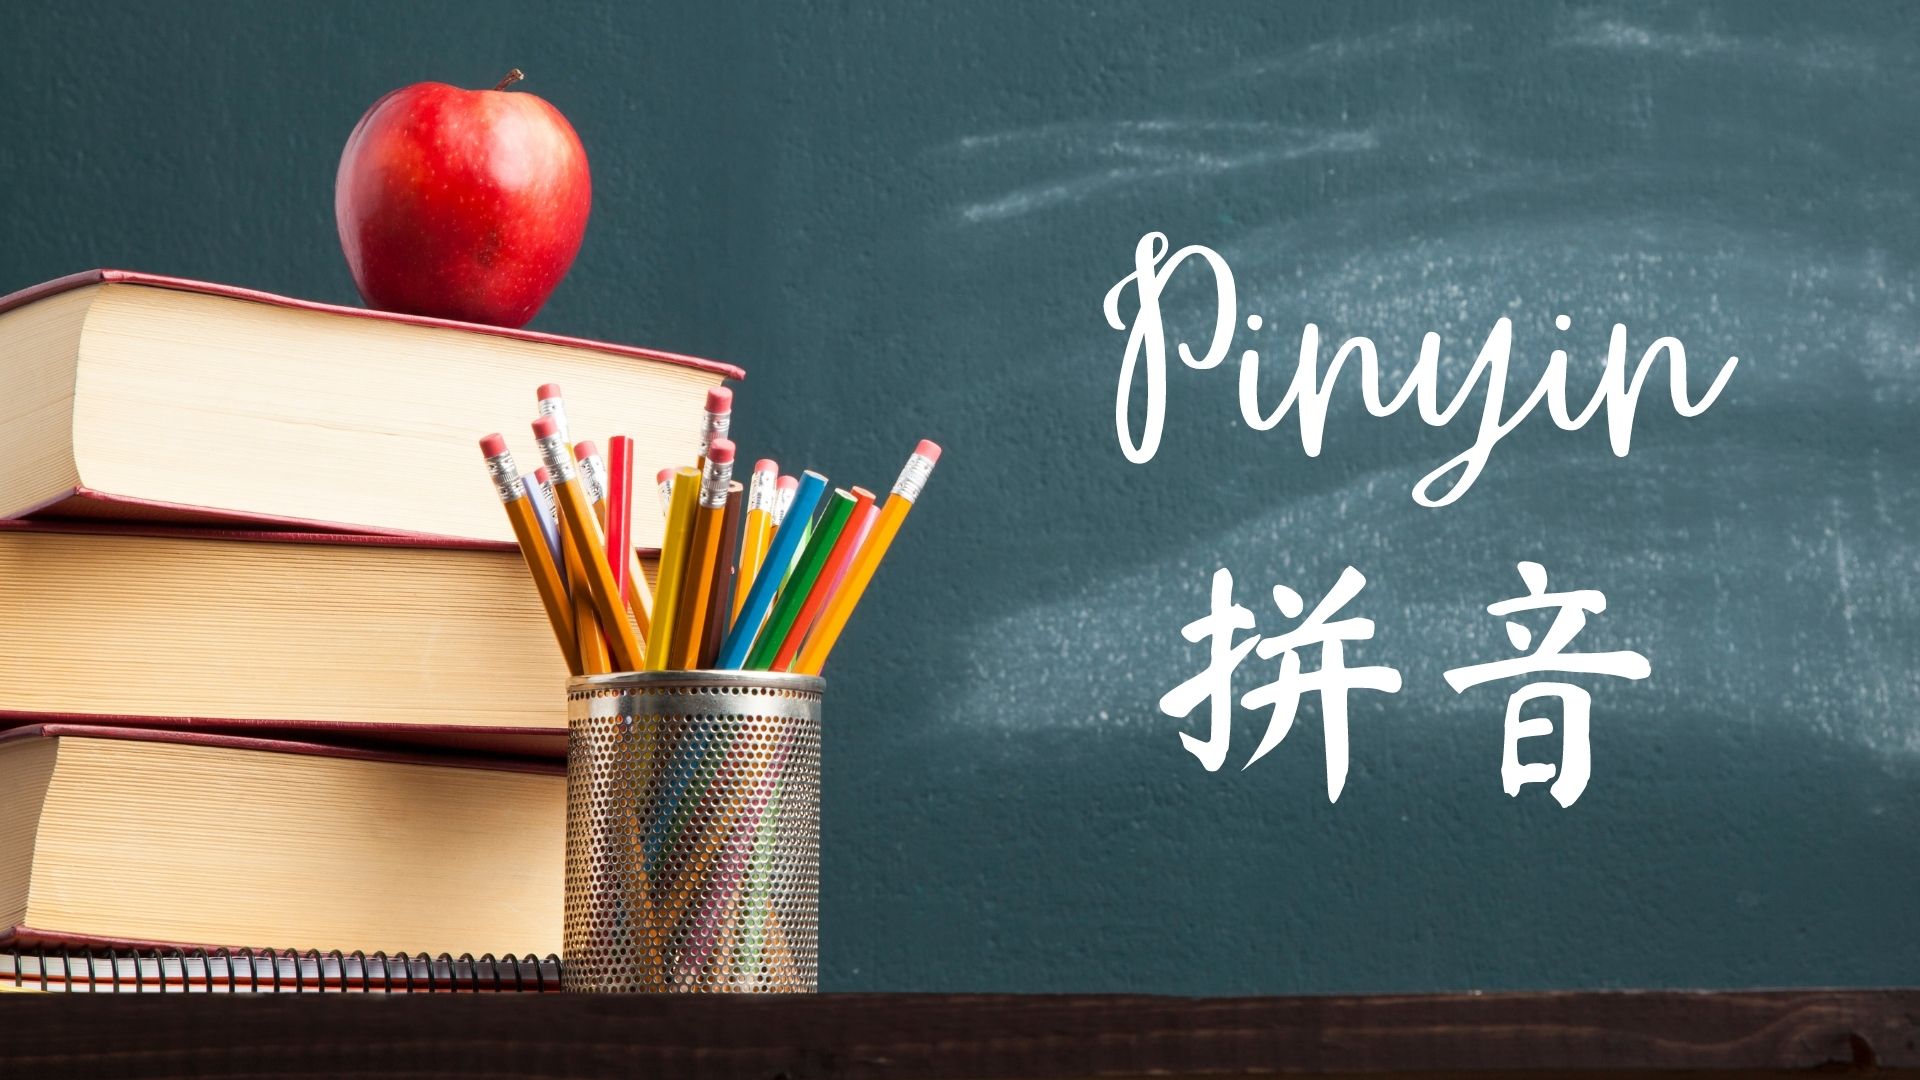 Pinyin Descomplicado – Saiba o que é e aprenda facilmente